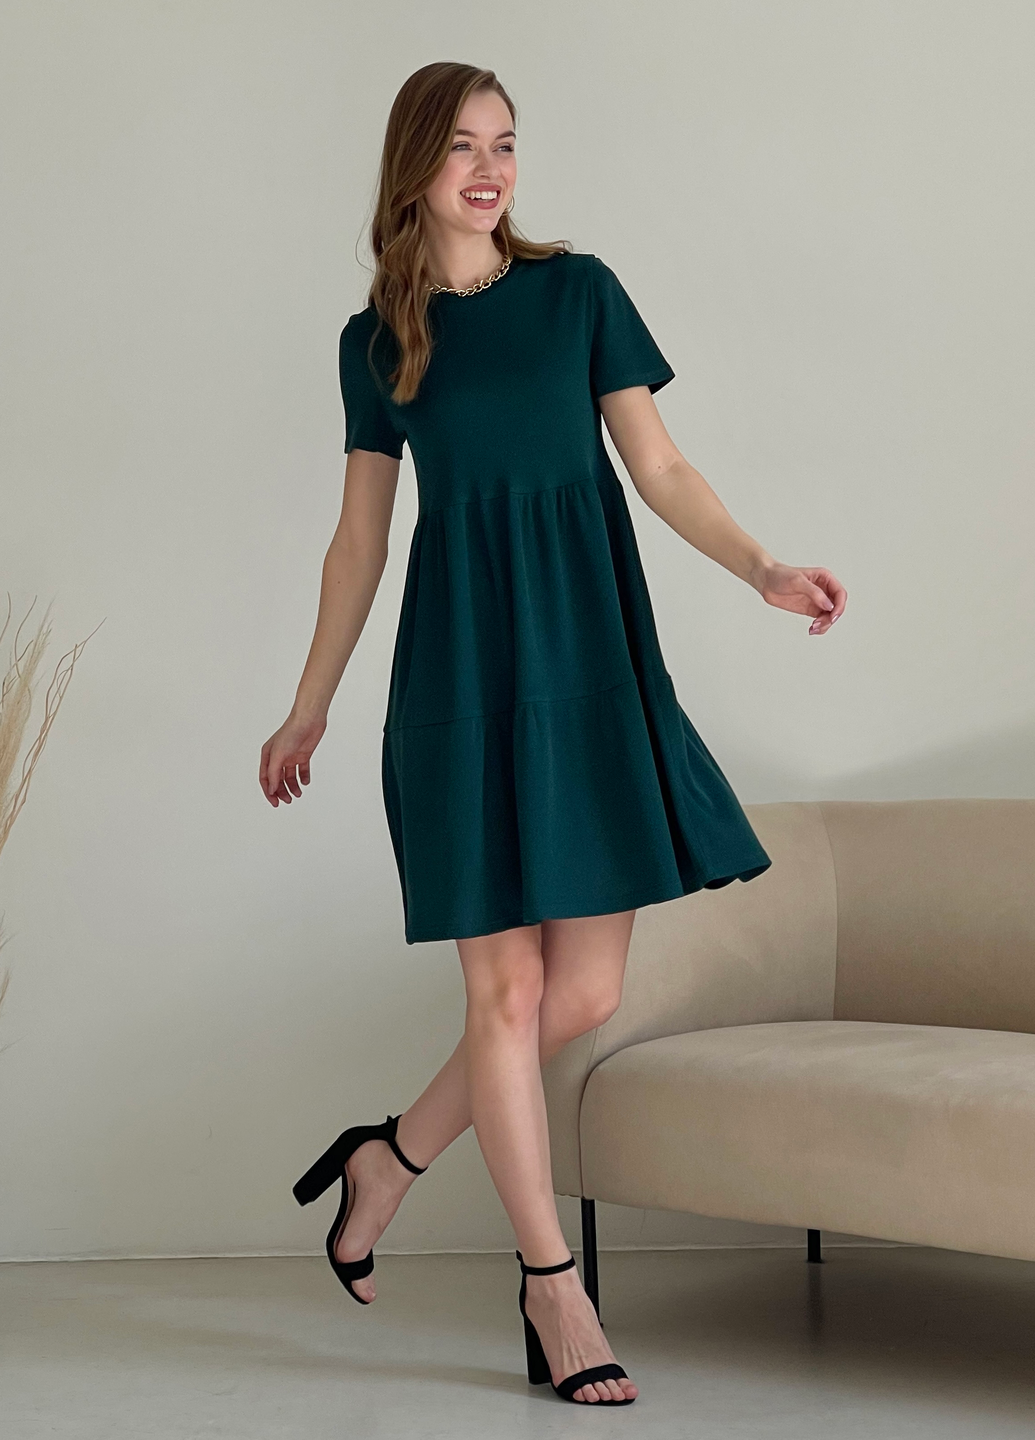 Купить Свободное платье трапеция миди зеленое Merlini Маркони 700001232 размер 42-44 (S-M) в интернет-магазине